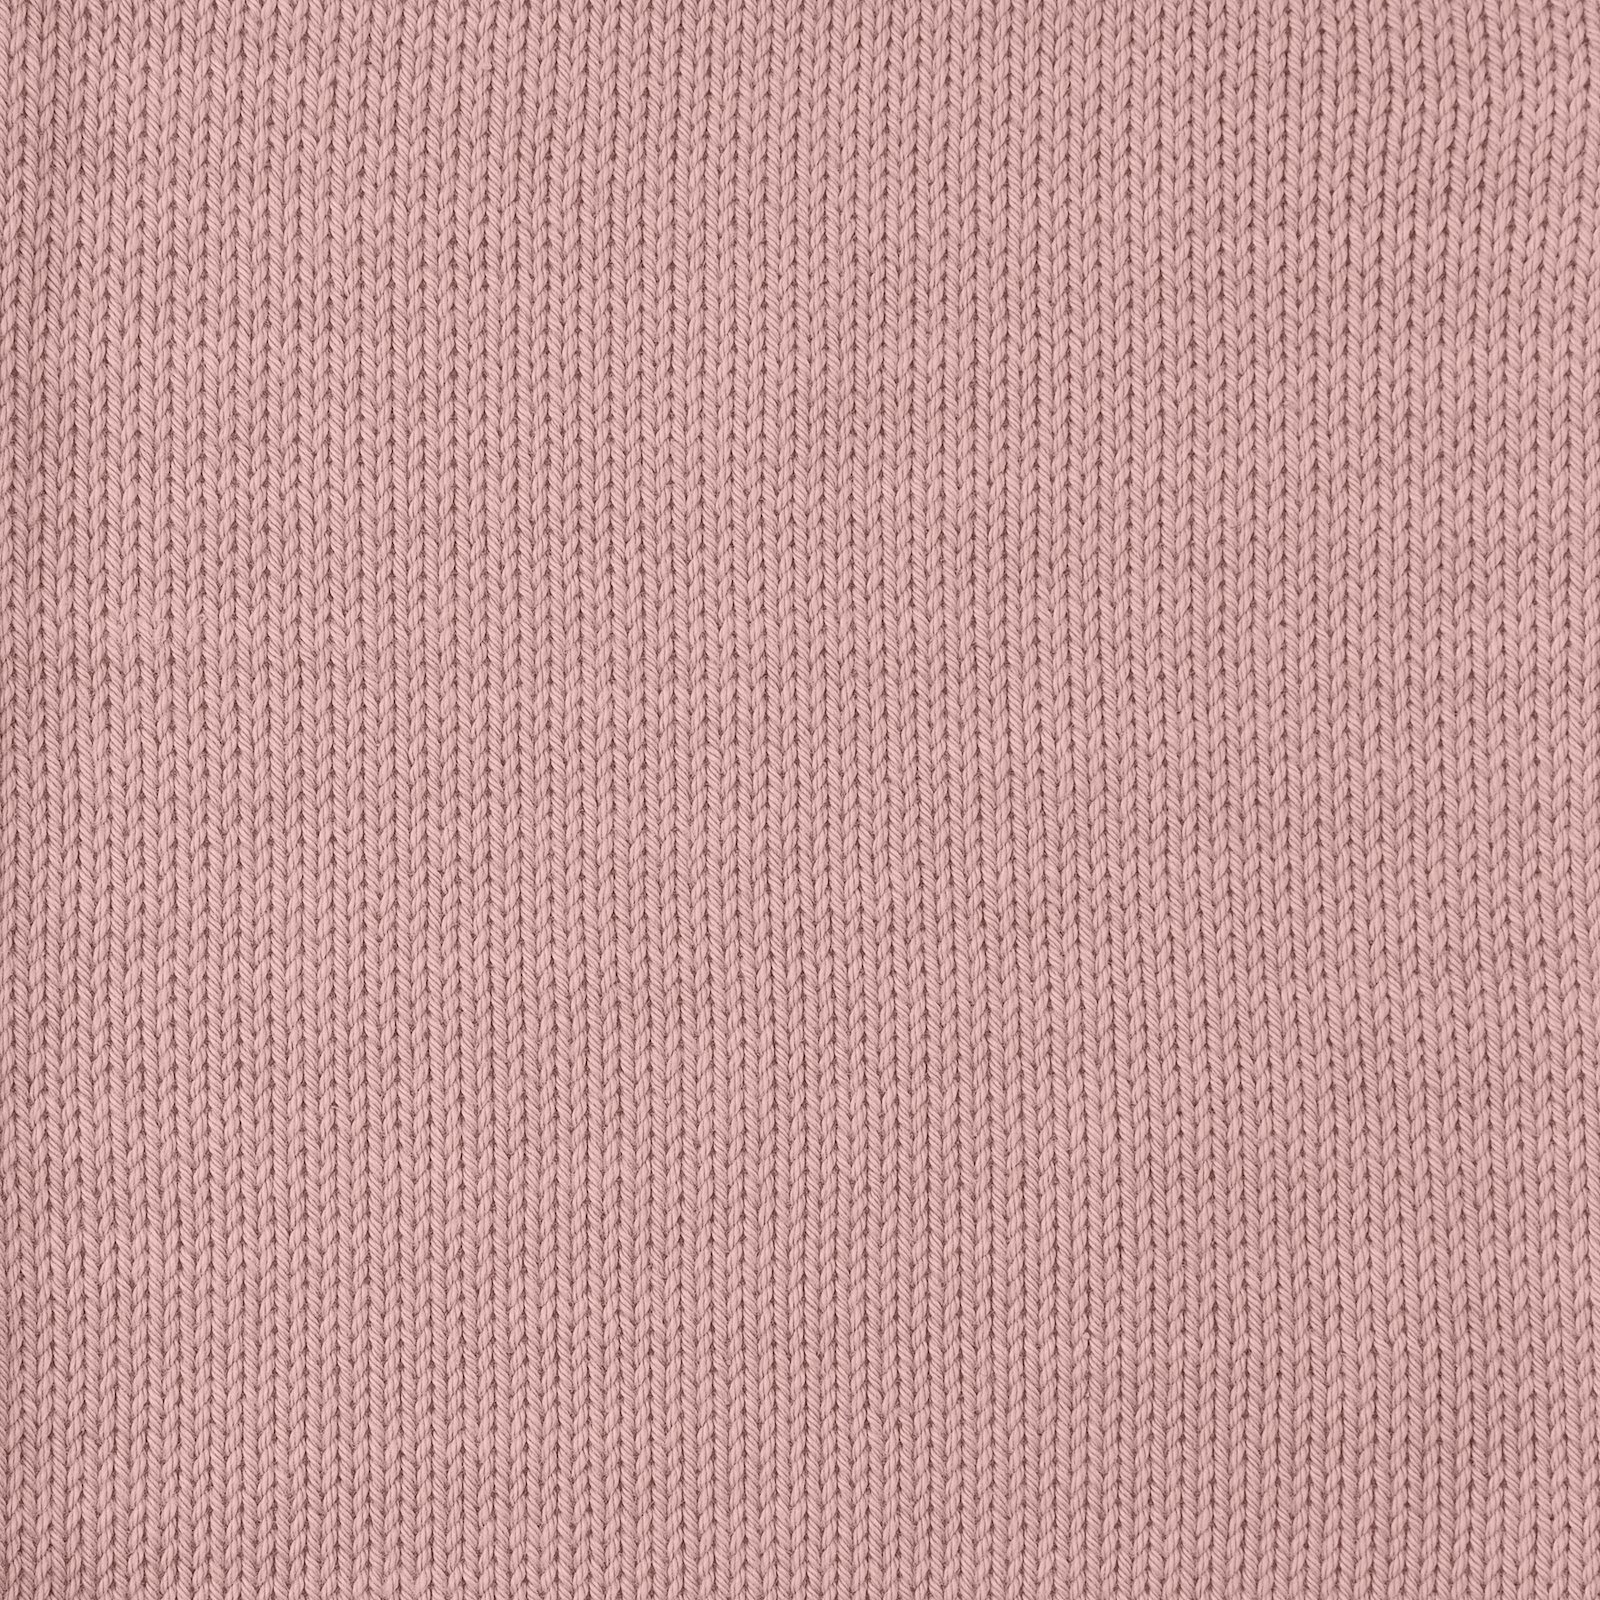 FRAYA, 100% cotton yarn "Colourful", peach 90060059_sskit